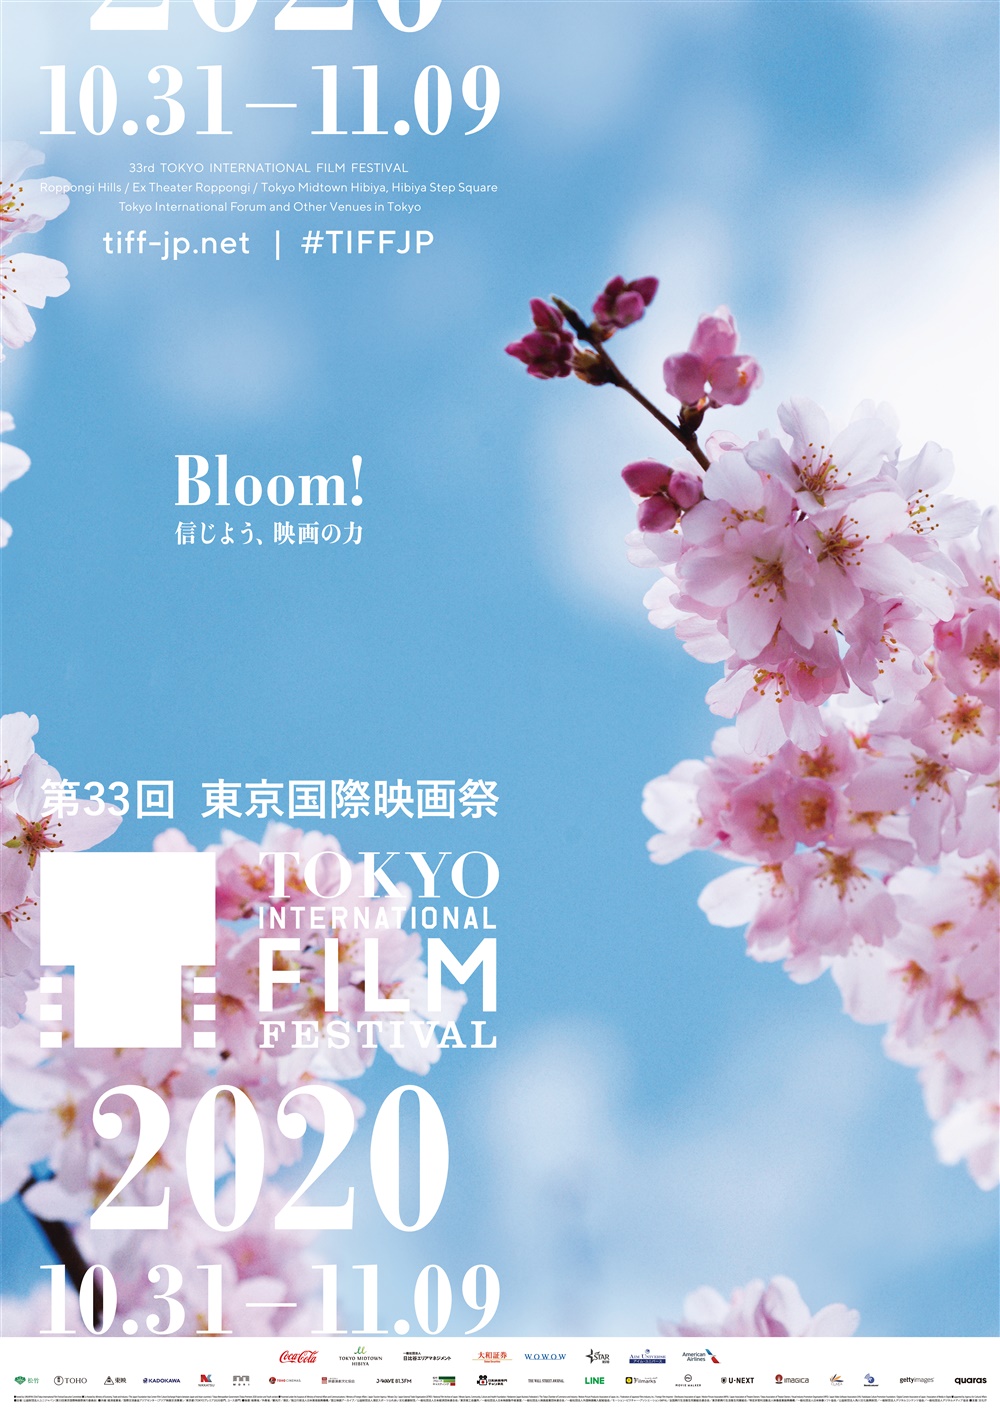 【画像】第33回東京国際映画祭(TIFF) ポスタービジュアル